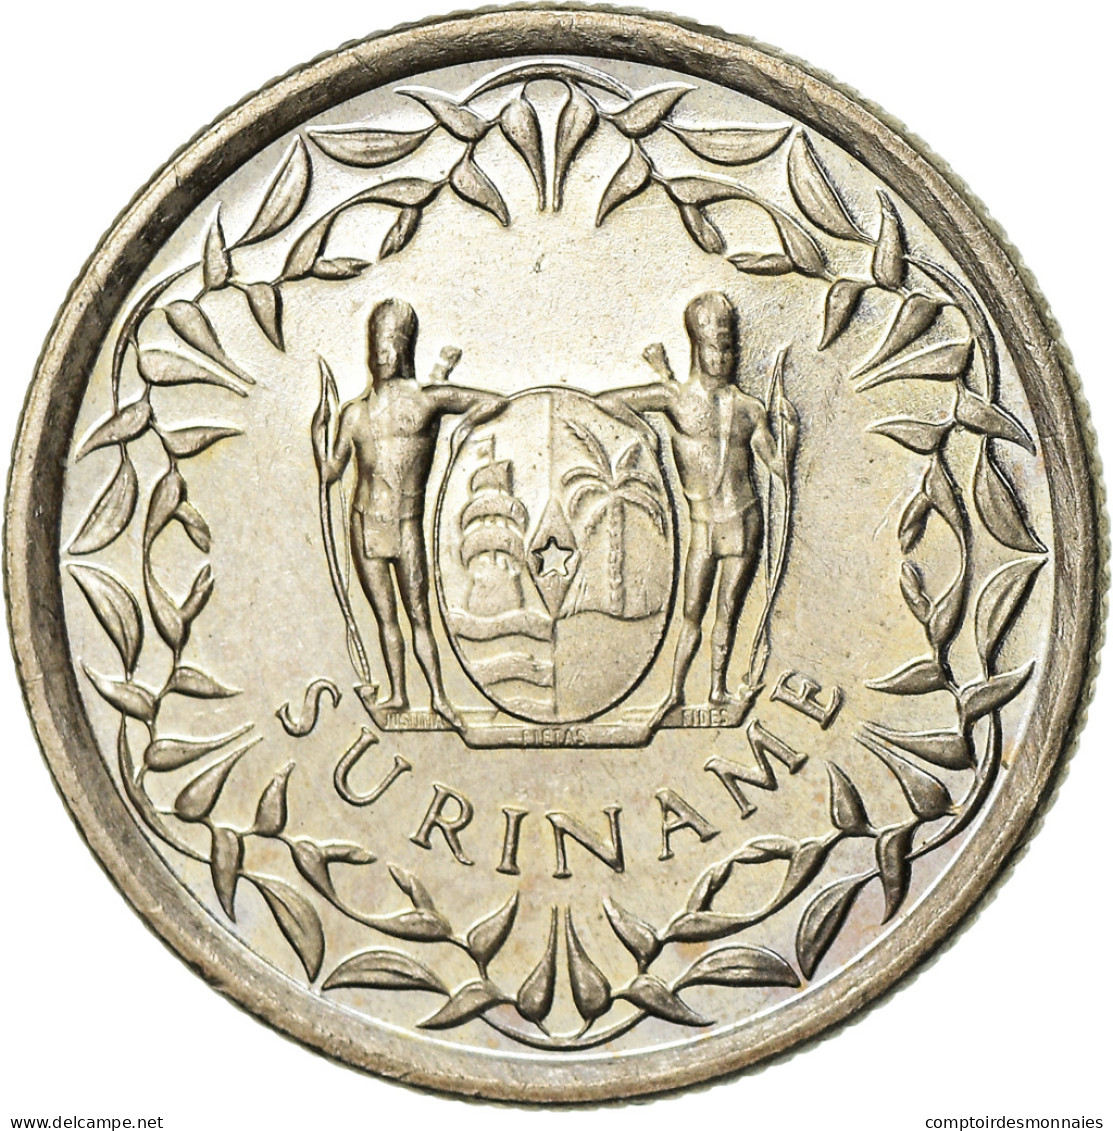 Monnaie, Surinam, 25 Cents, 1989, TTB, Nickel Plated Steel, KM:14A - Surinam 1975 - ...